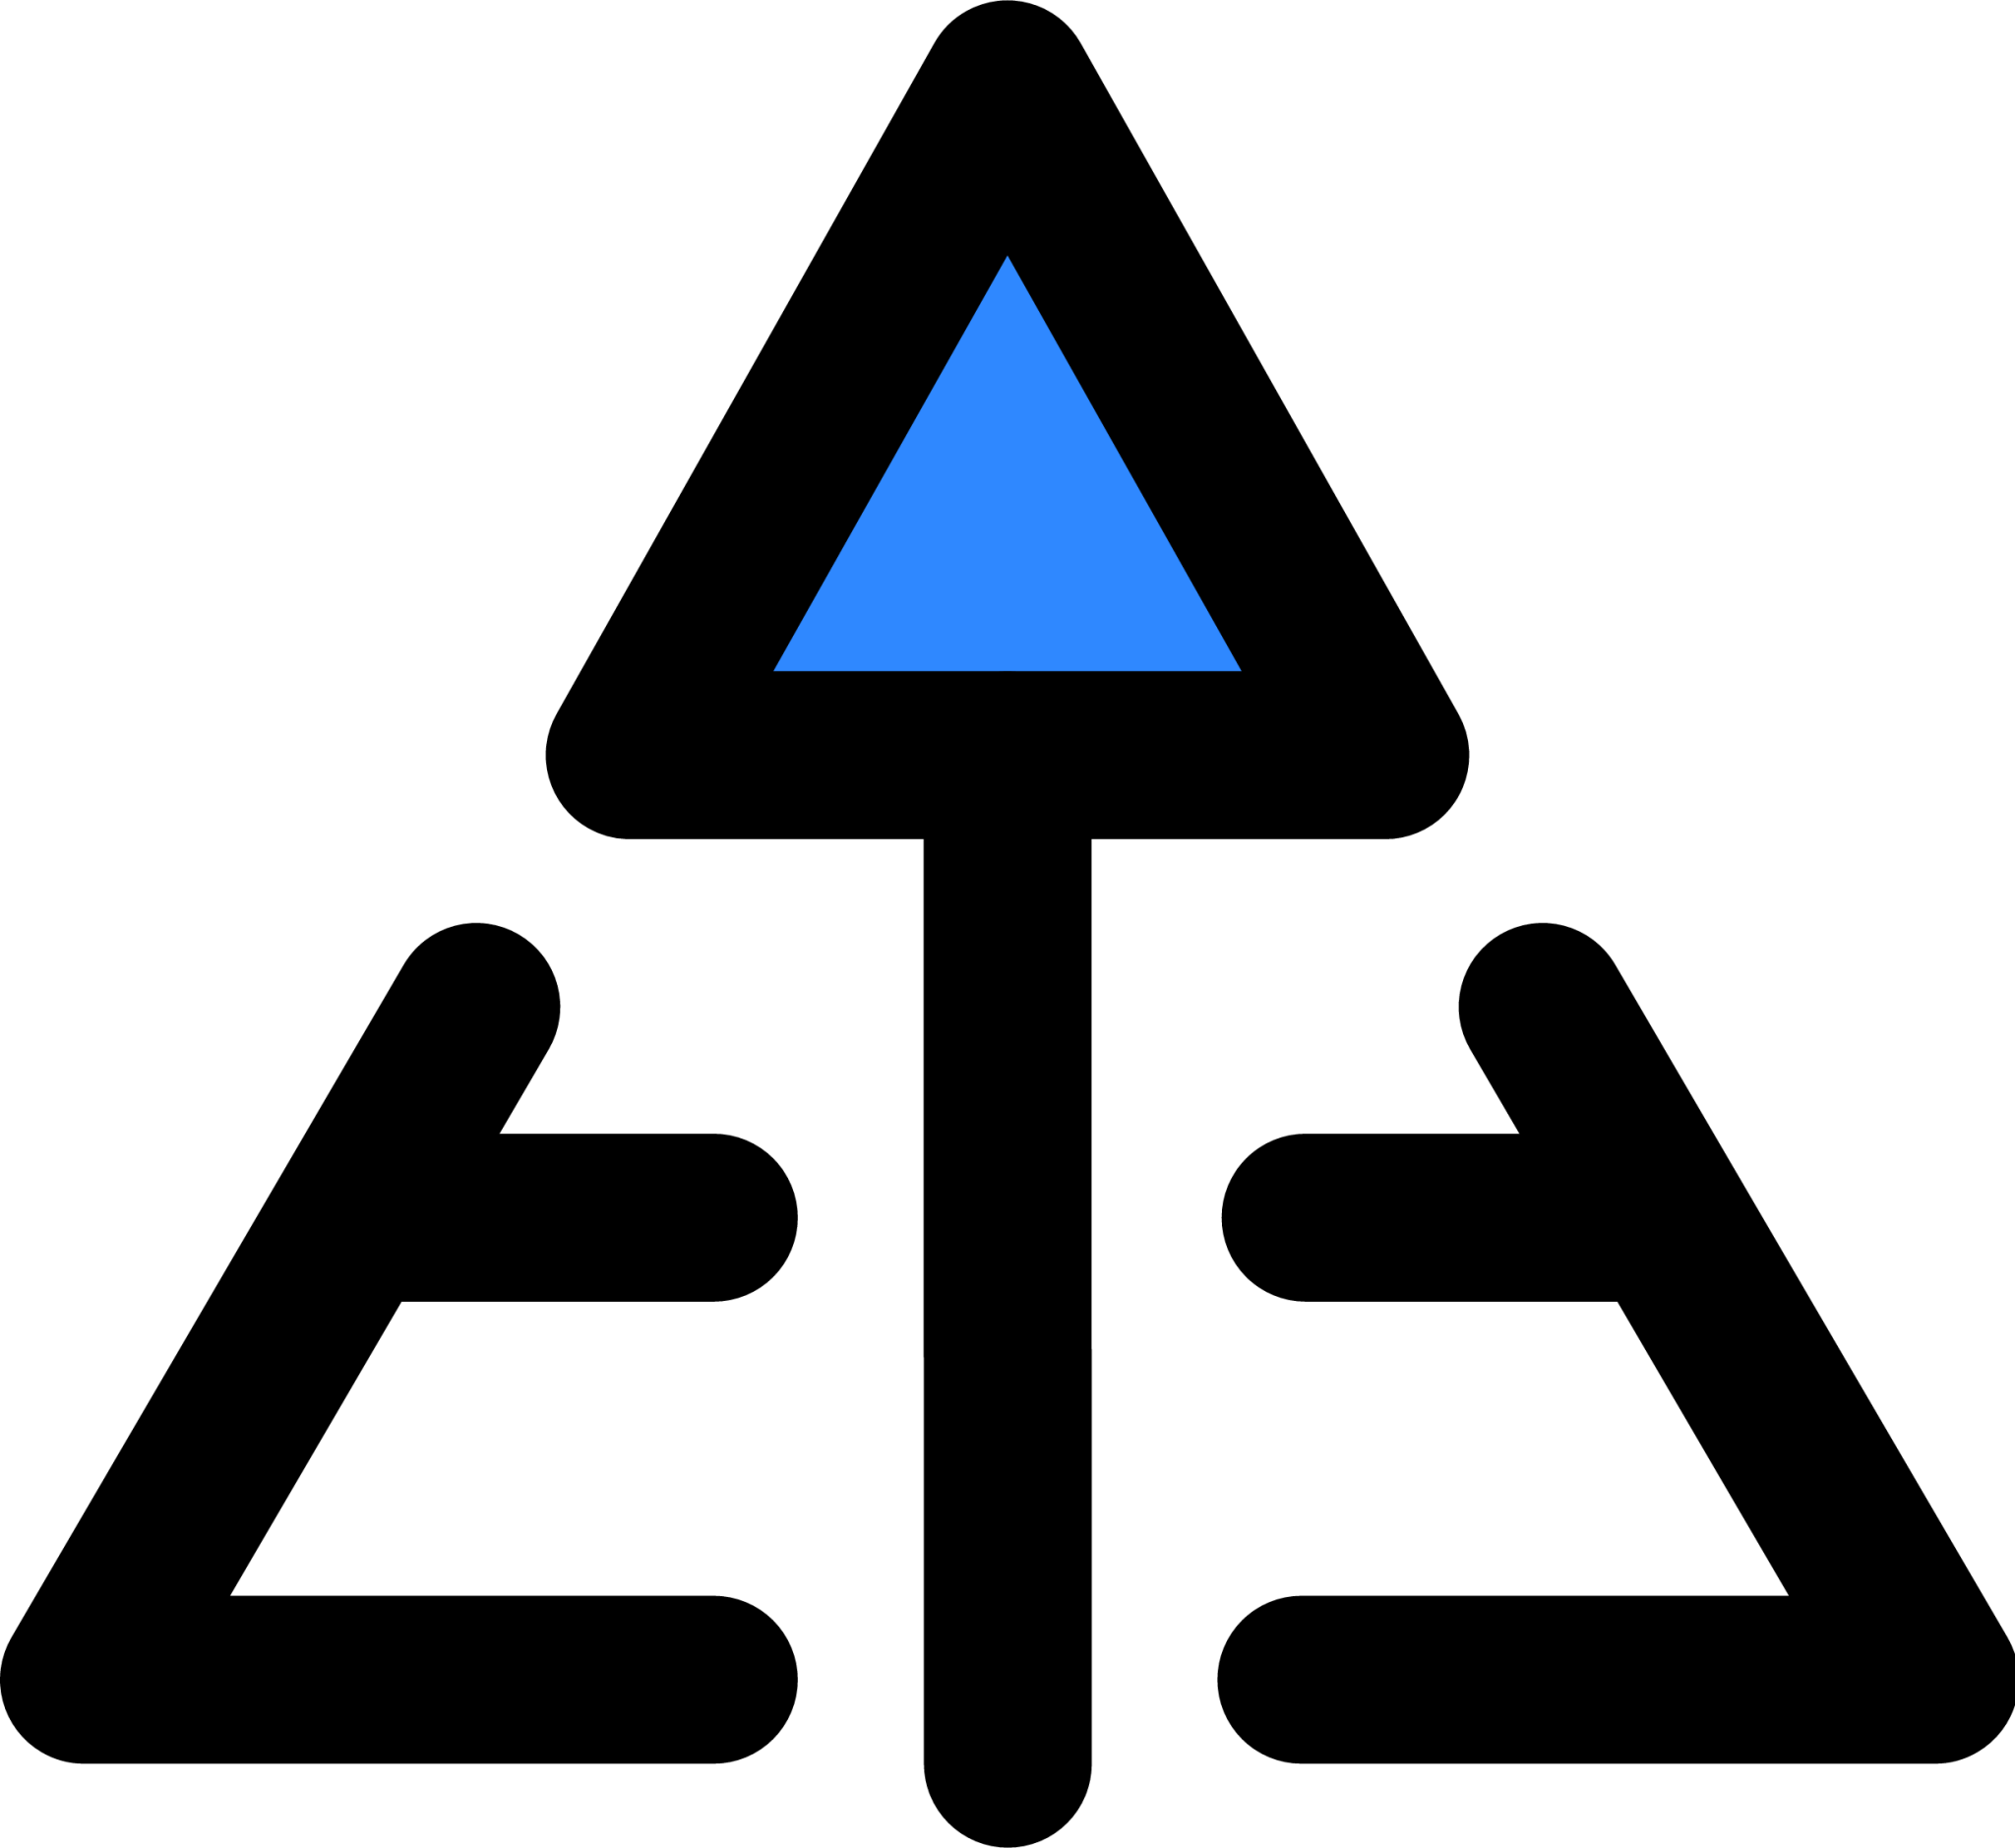 maslow pyramids icon